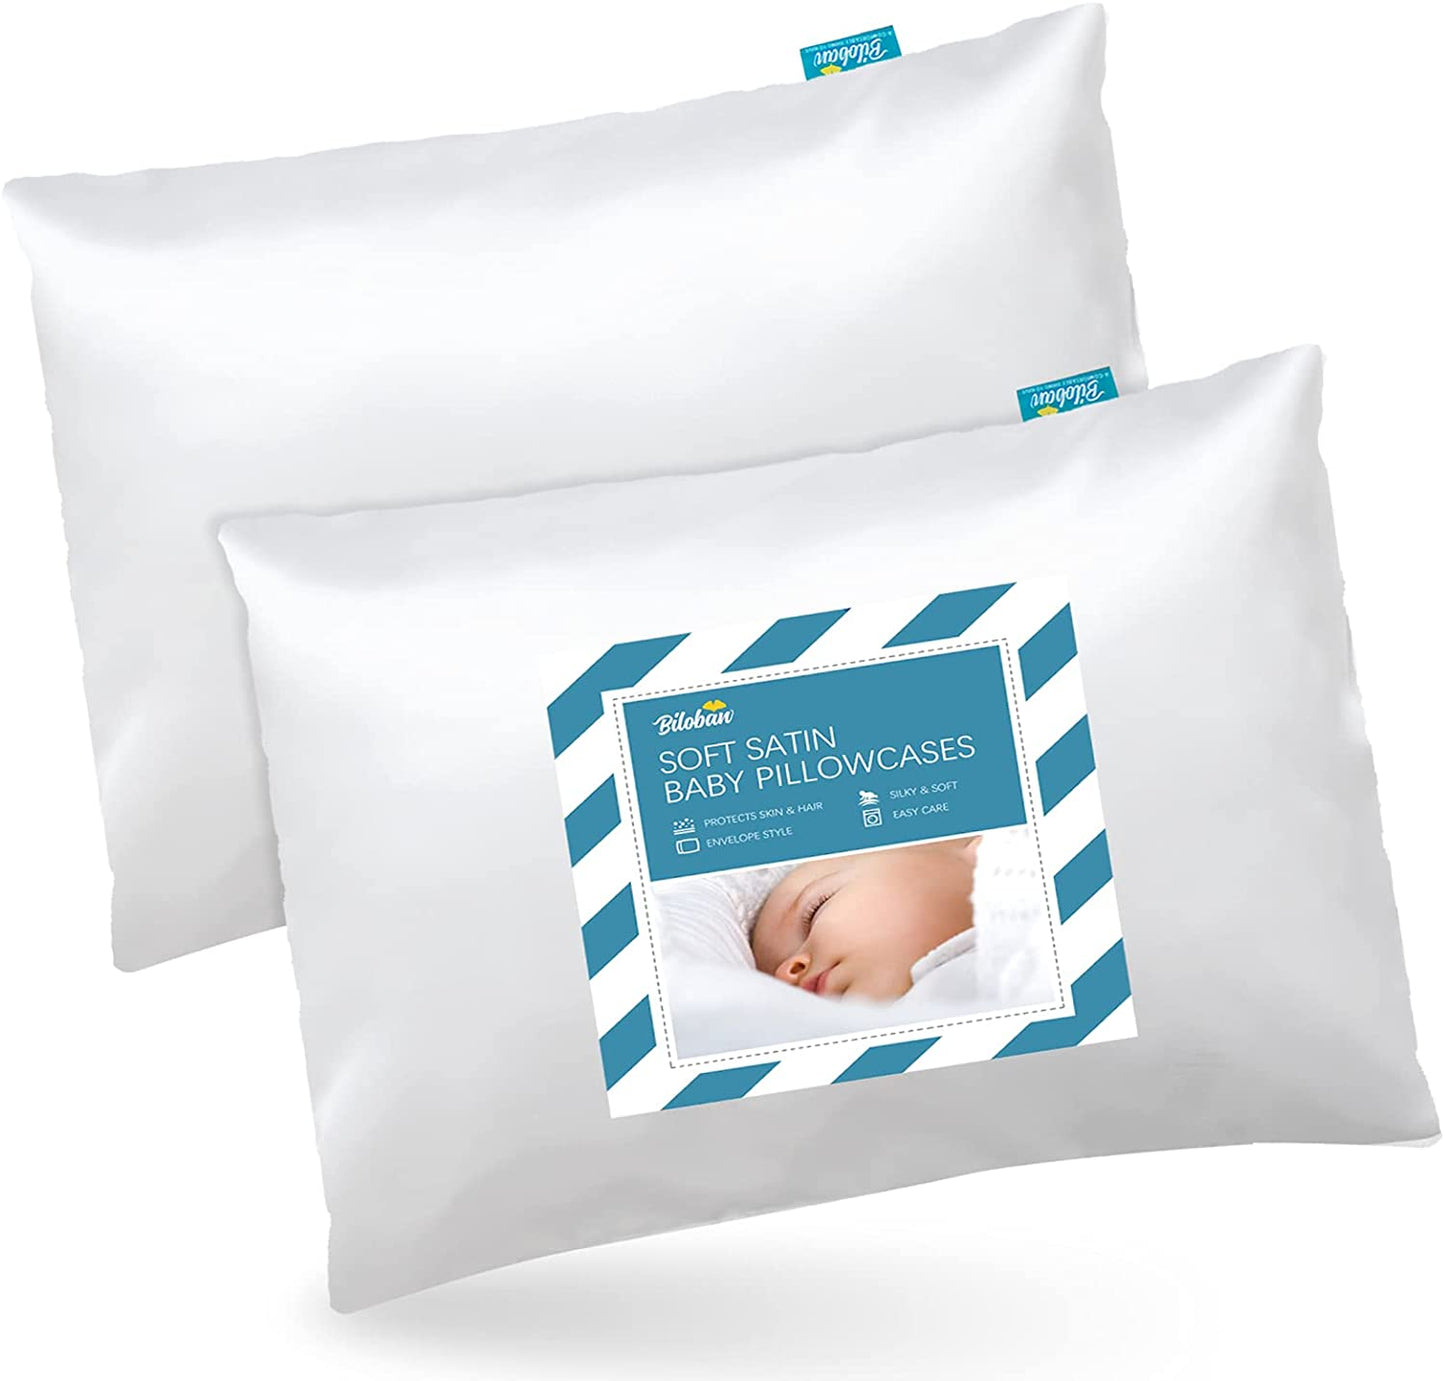 Toddler Pillowcase - 2 pack, 13" x18", Silky Soft Satin, Envelope Style, White - Biloban Online Store